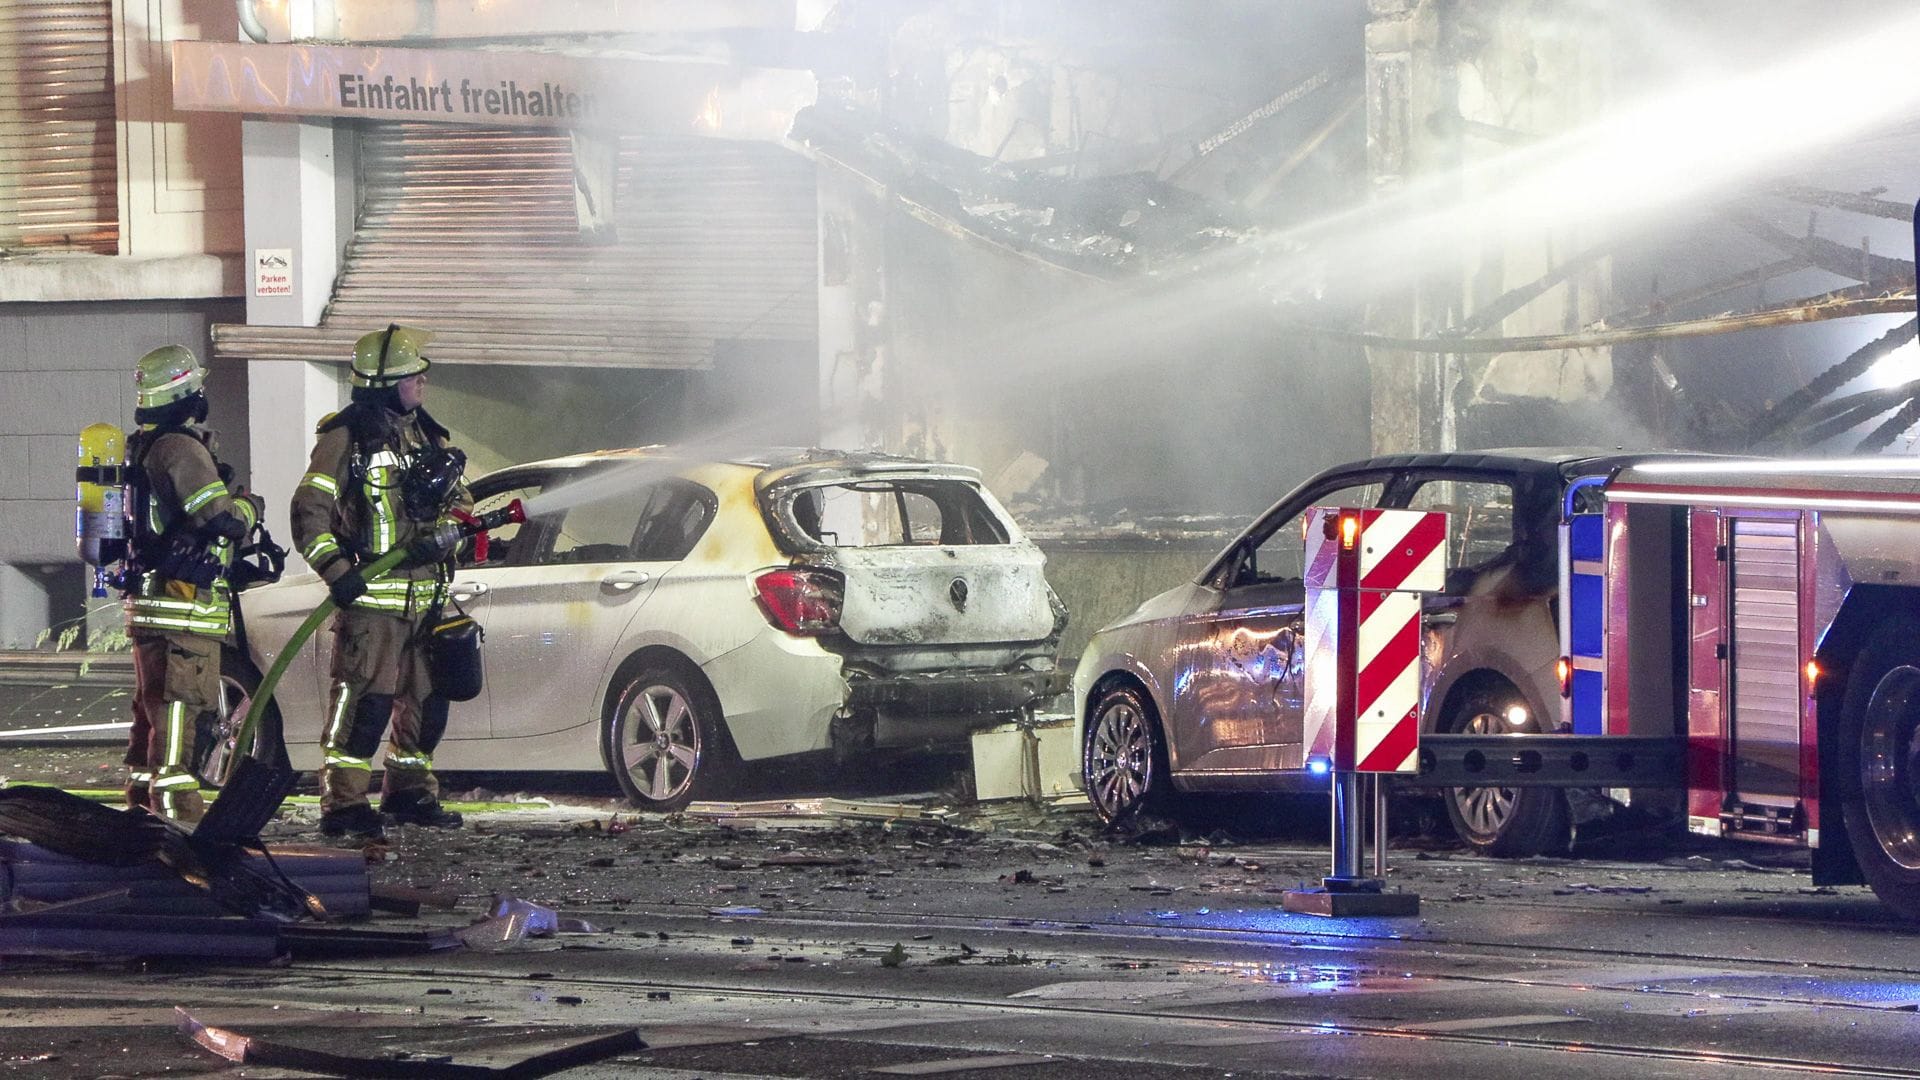 Düsseldorf: Explosion in Kiosk – mehrere Menschen getötet und verletzt